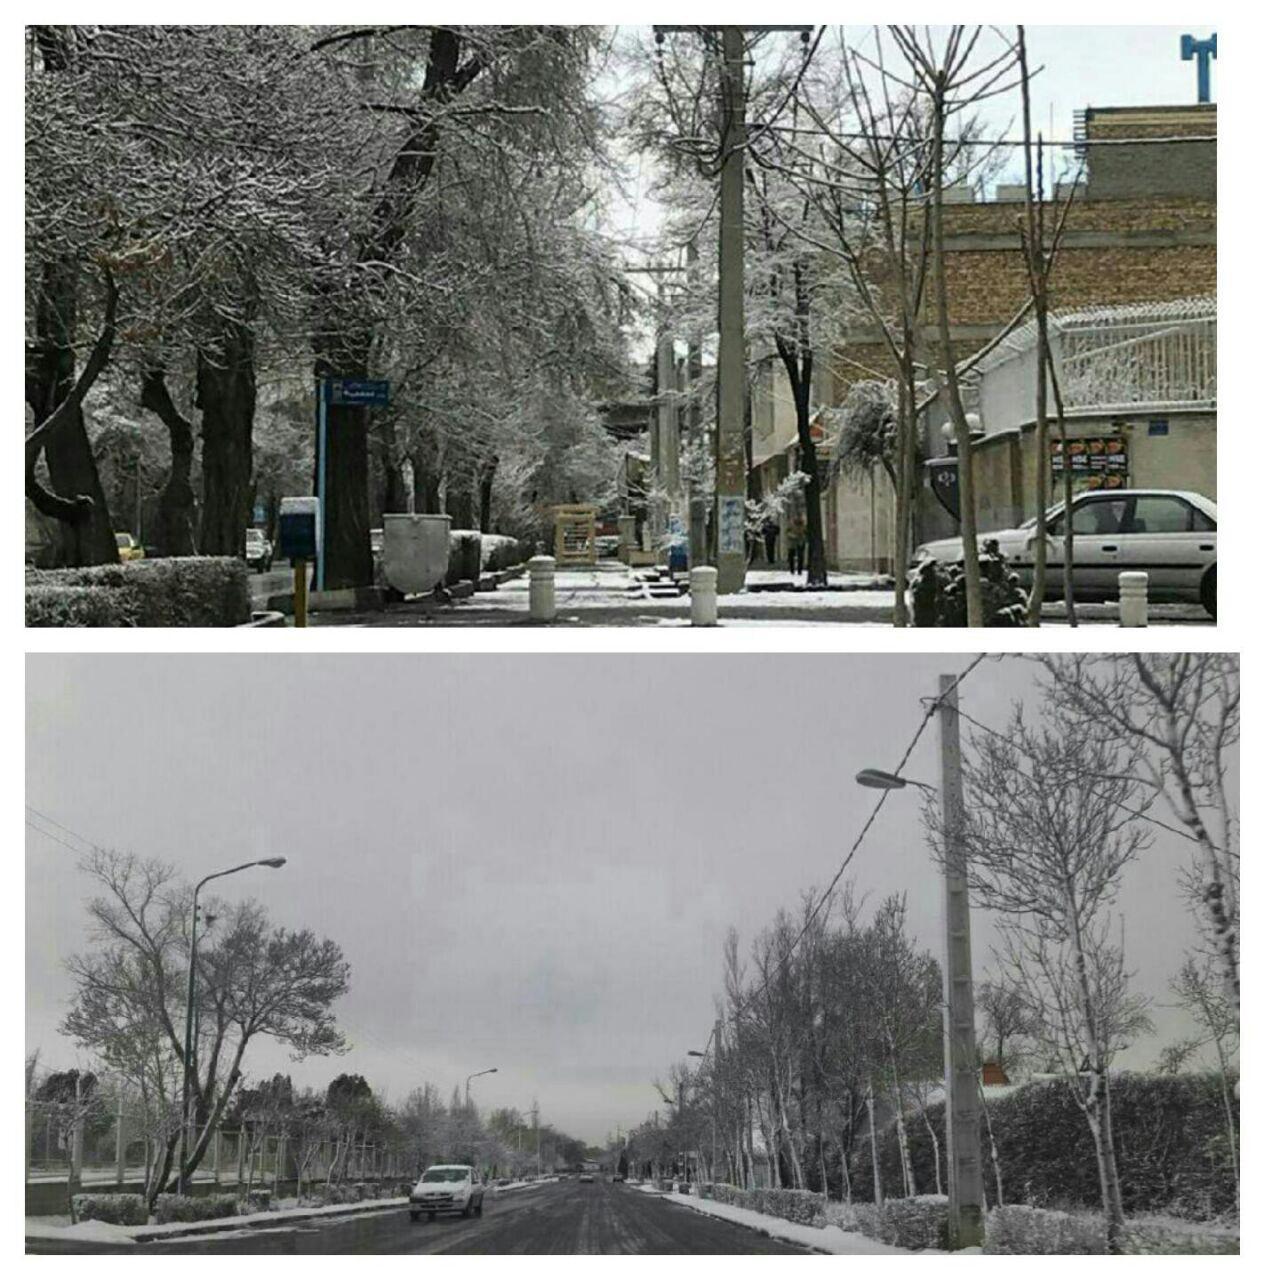 استان مرکزی سفید پوش شد/ تعطیلی مدارس استان مرکزی به علت بارش برف